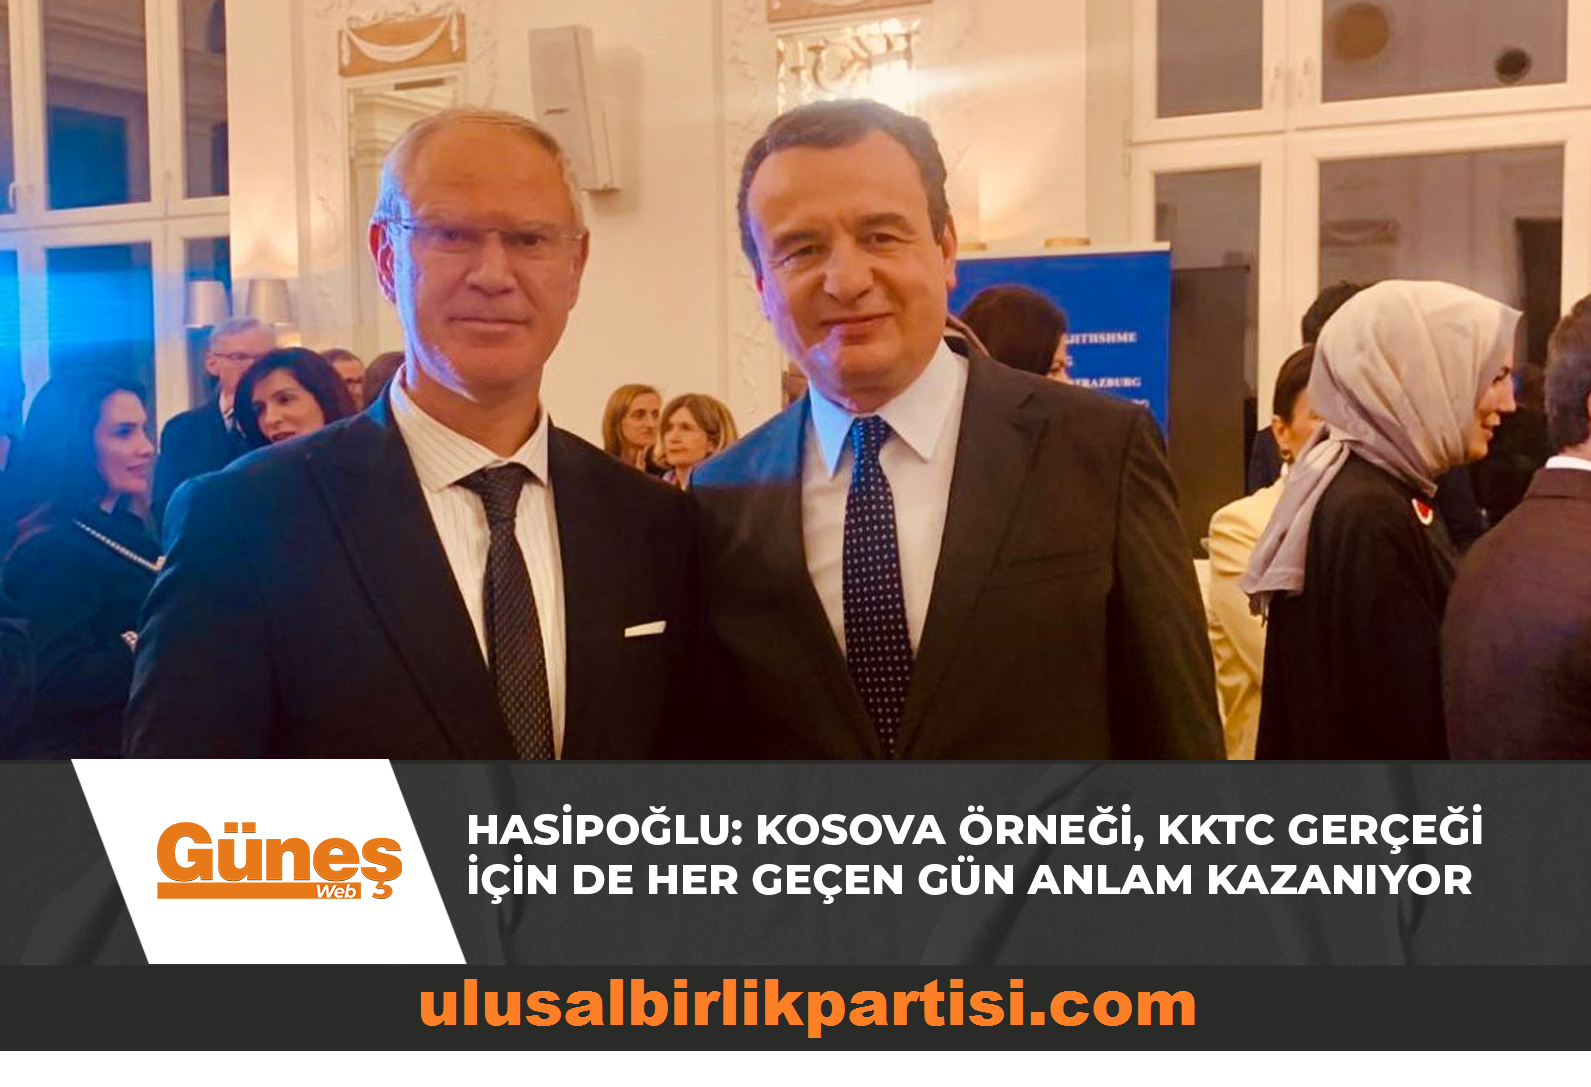 Read more about the article Hasipoğlu: Kosova Örneği, KKTC Gerçeği İçin De Her Geçen Gün Anlam Kazanıyor